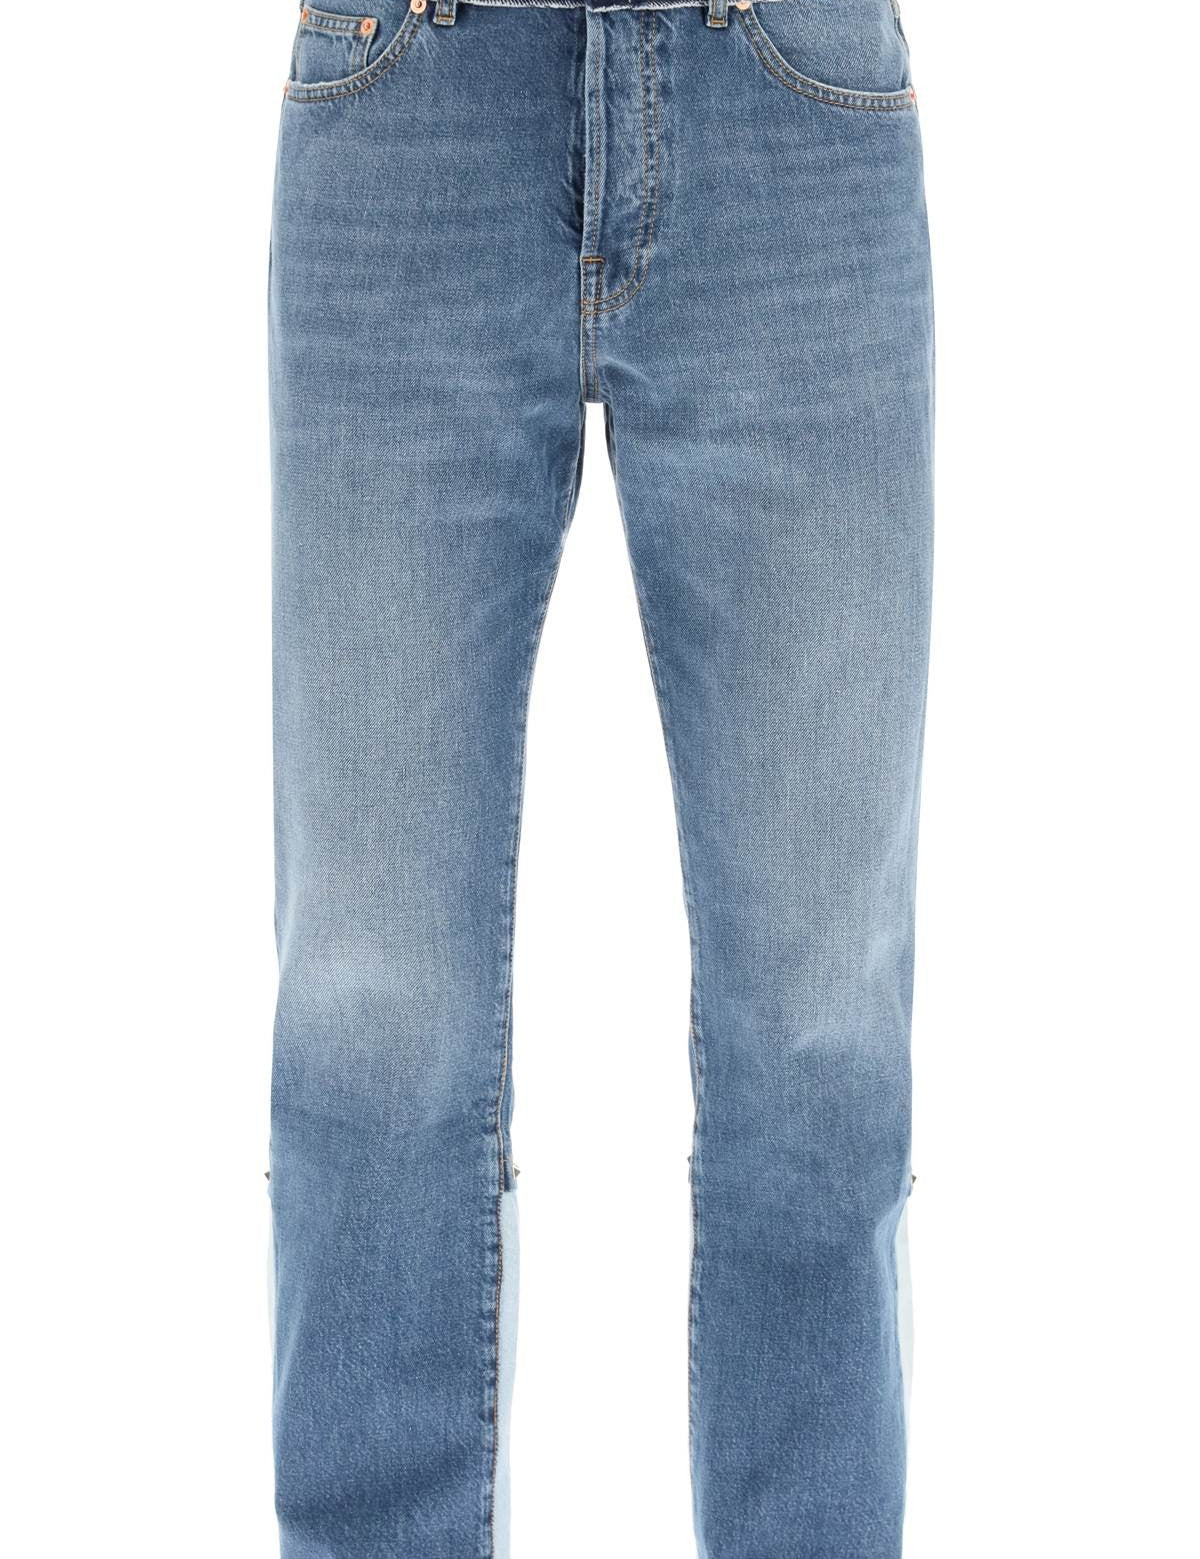 valentino-regular-fit-rockstud-jeans.jpg